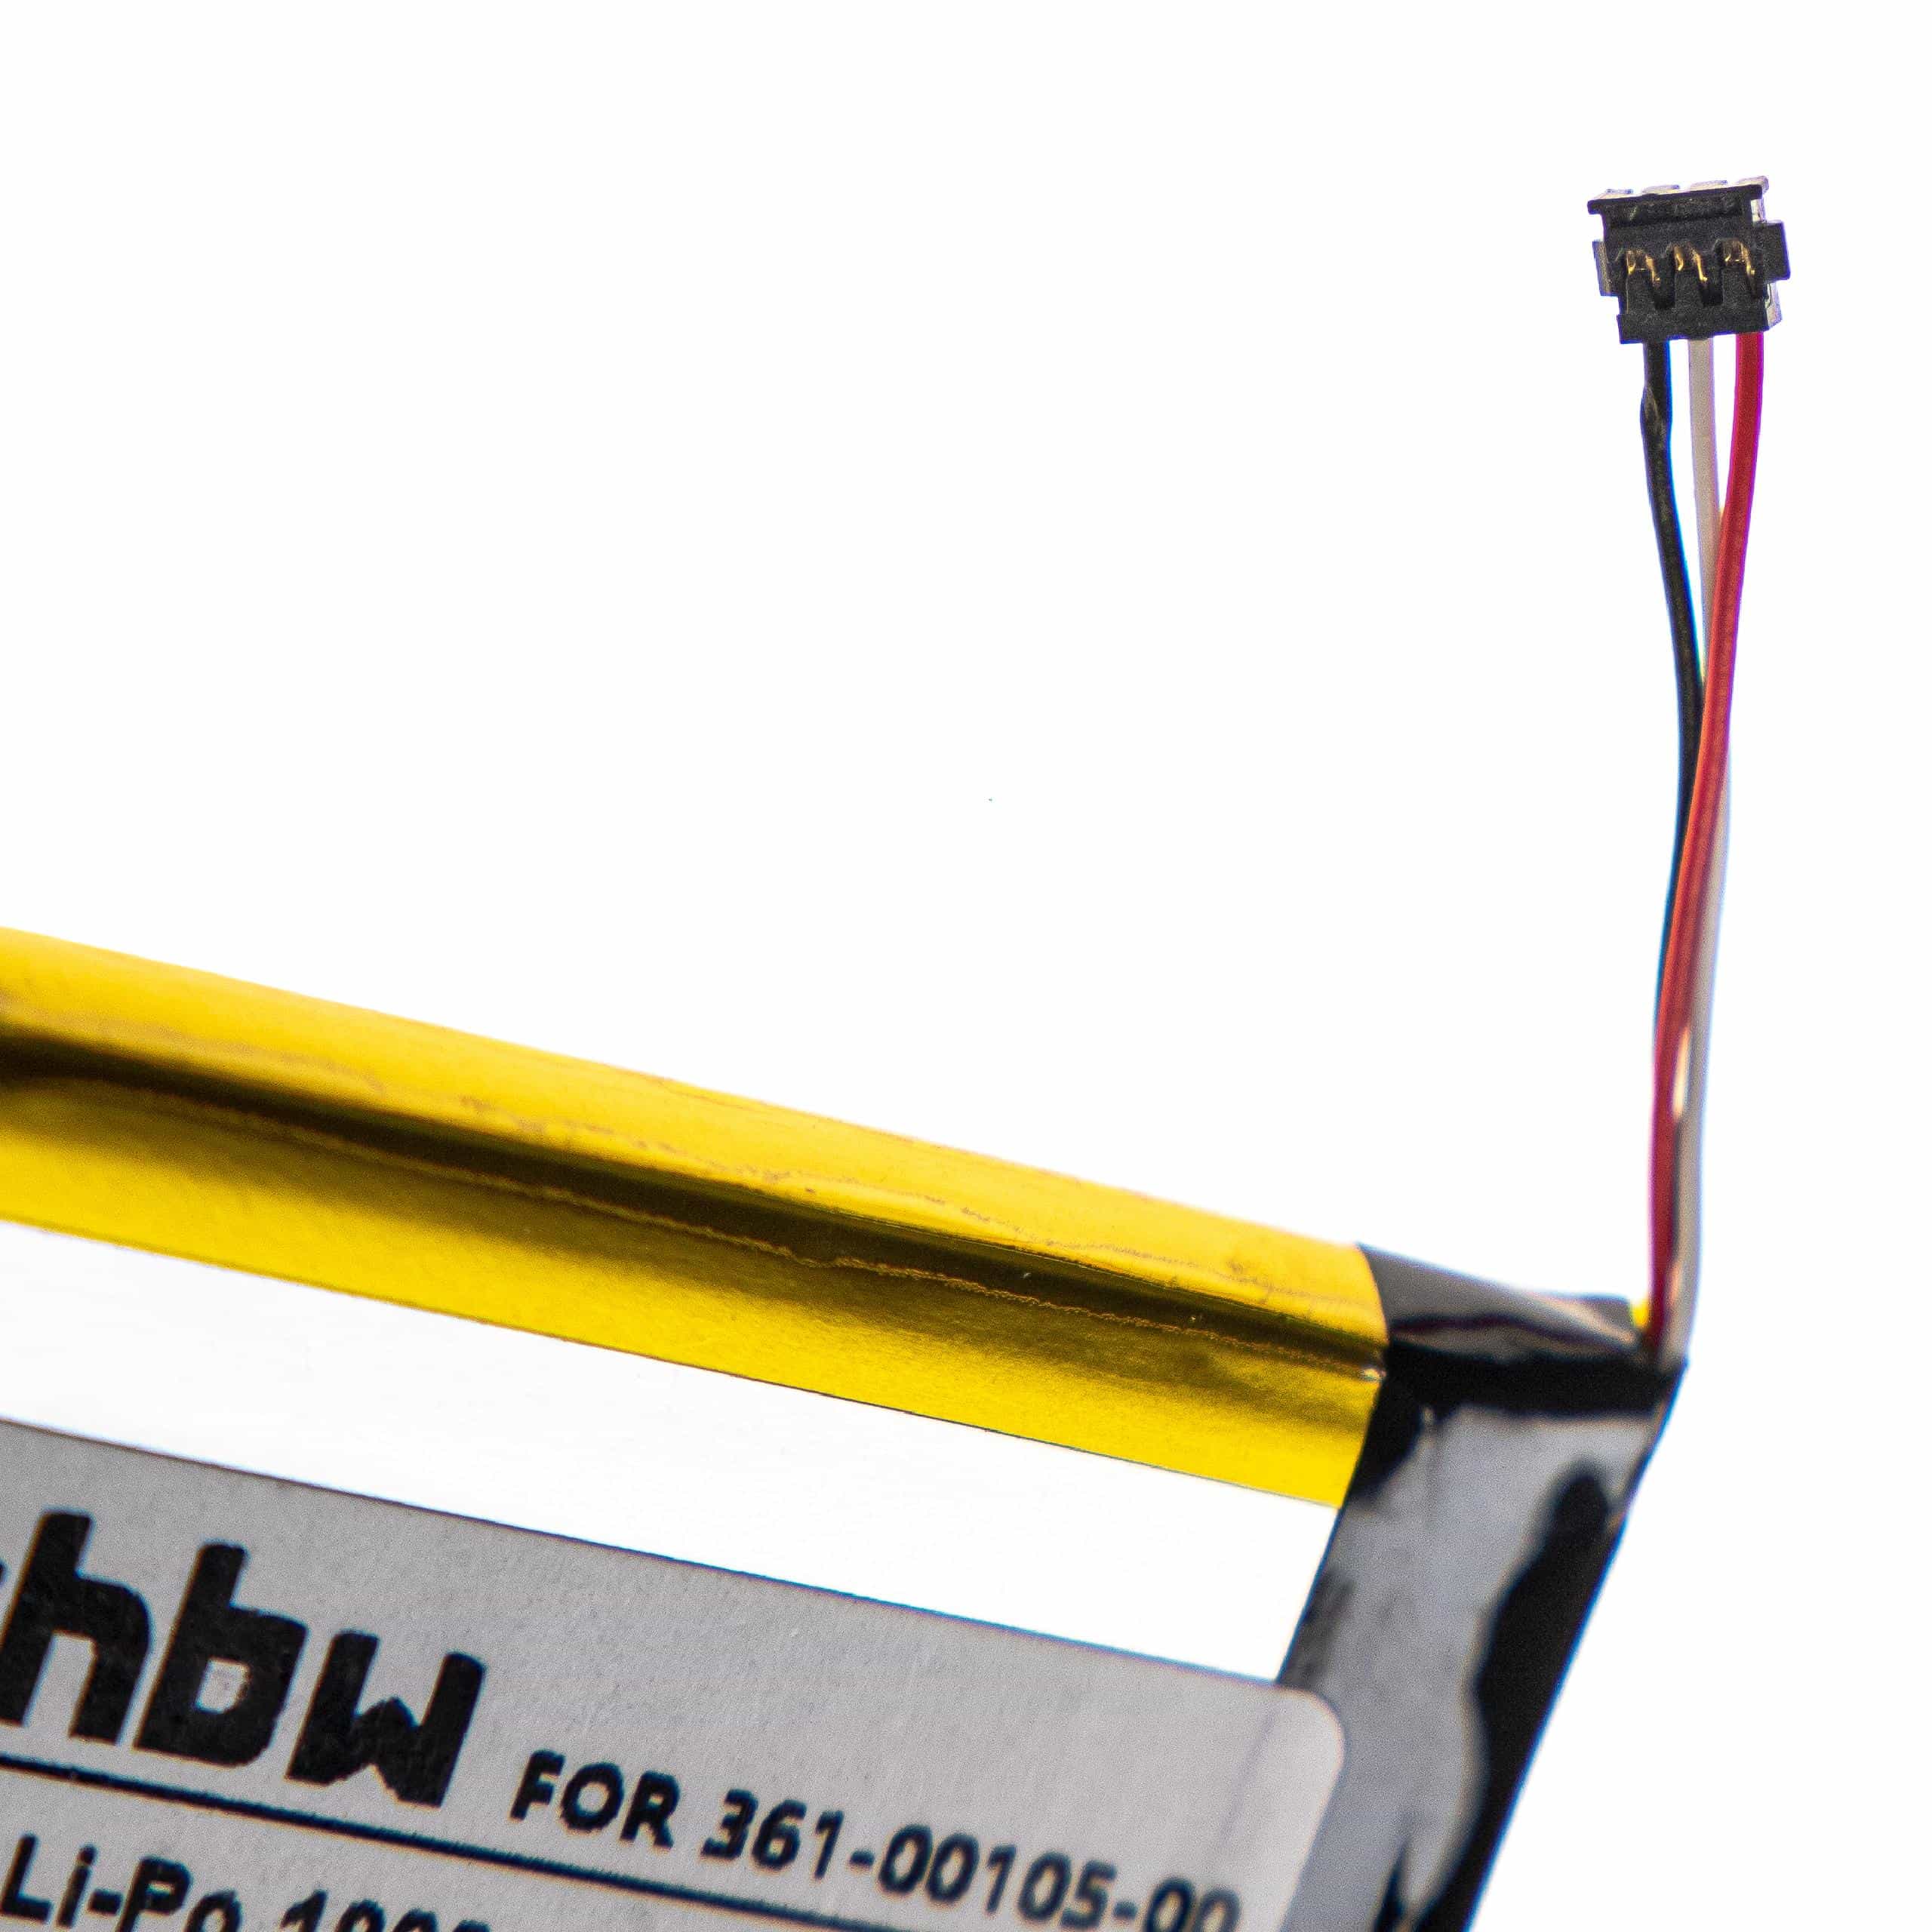 Batterie remplace Garmin 1ICP7/49/43, 361-00105-00 pour compteur de vélo GPS - 1900mAh 3,8V Li-polymère